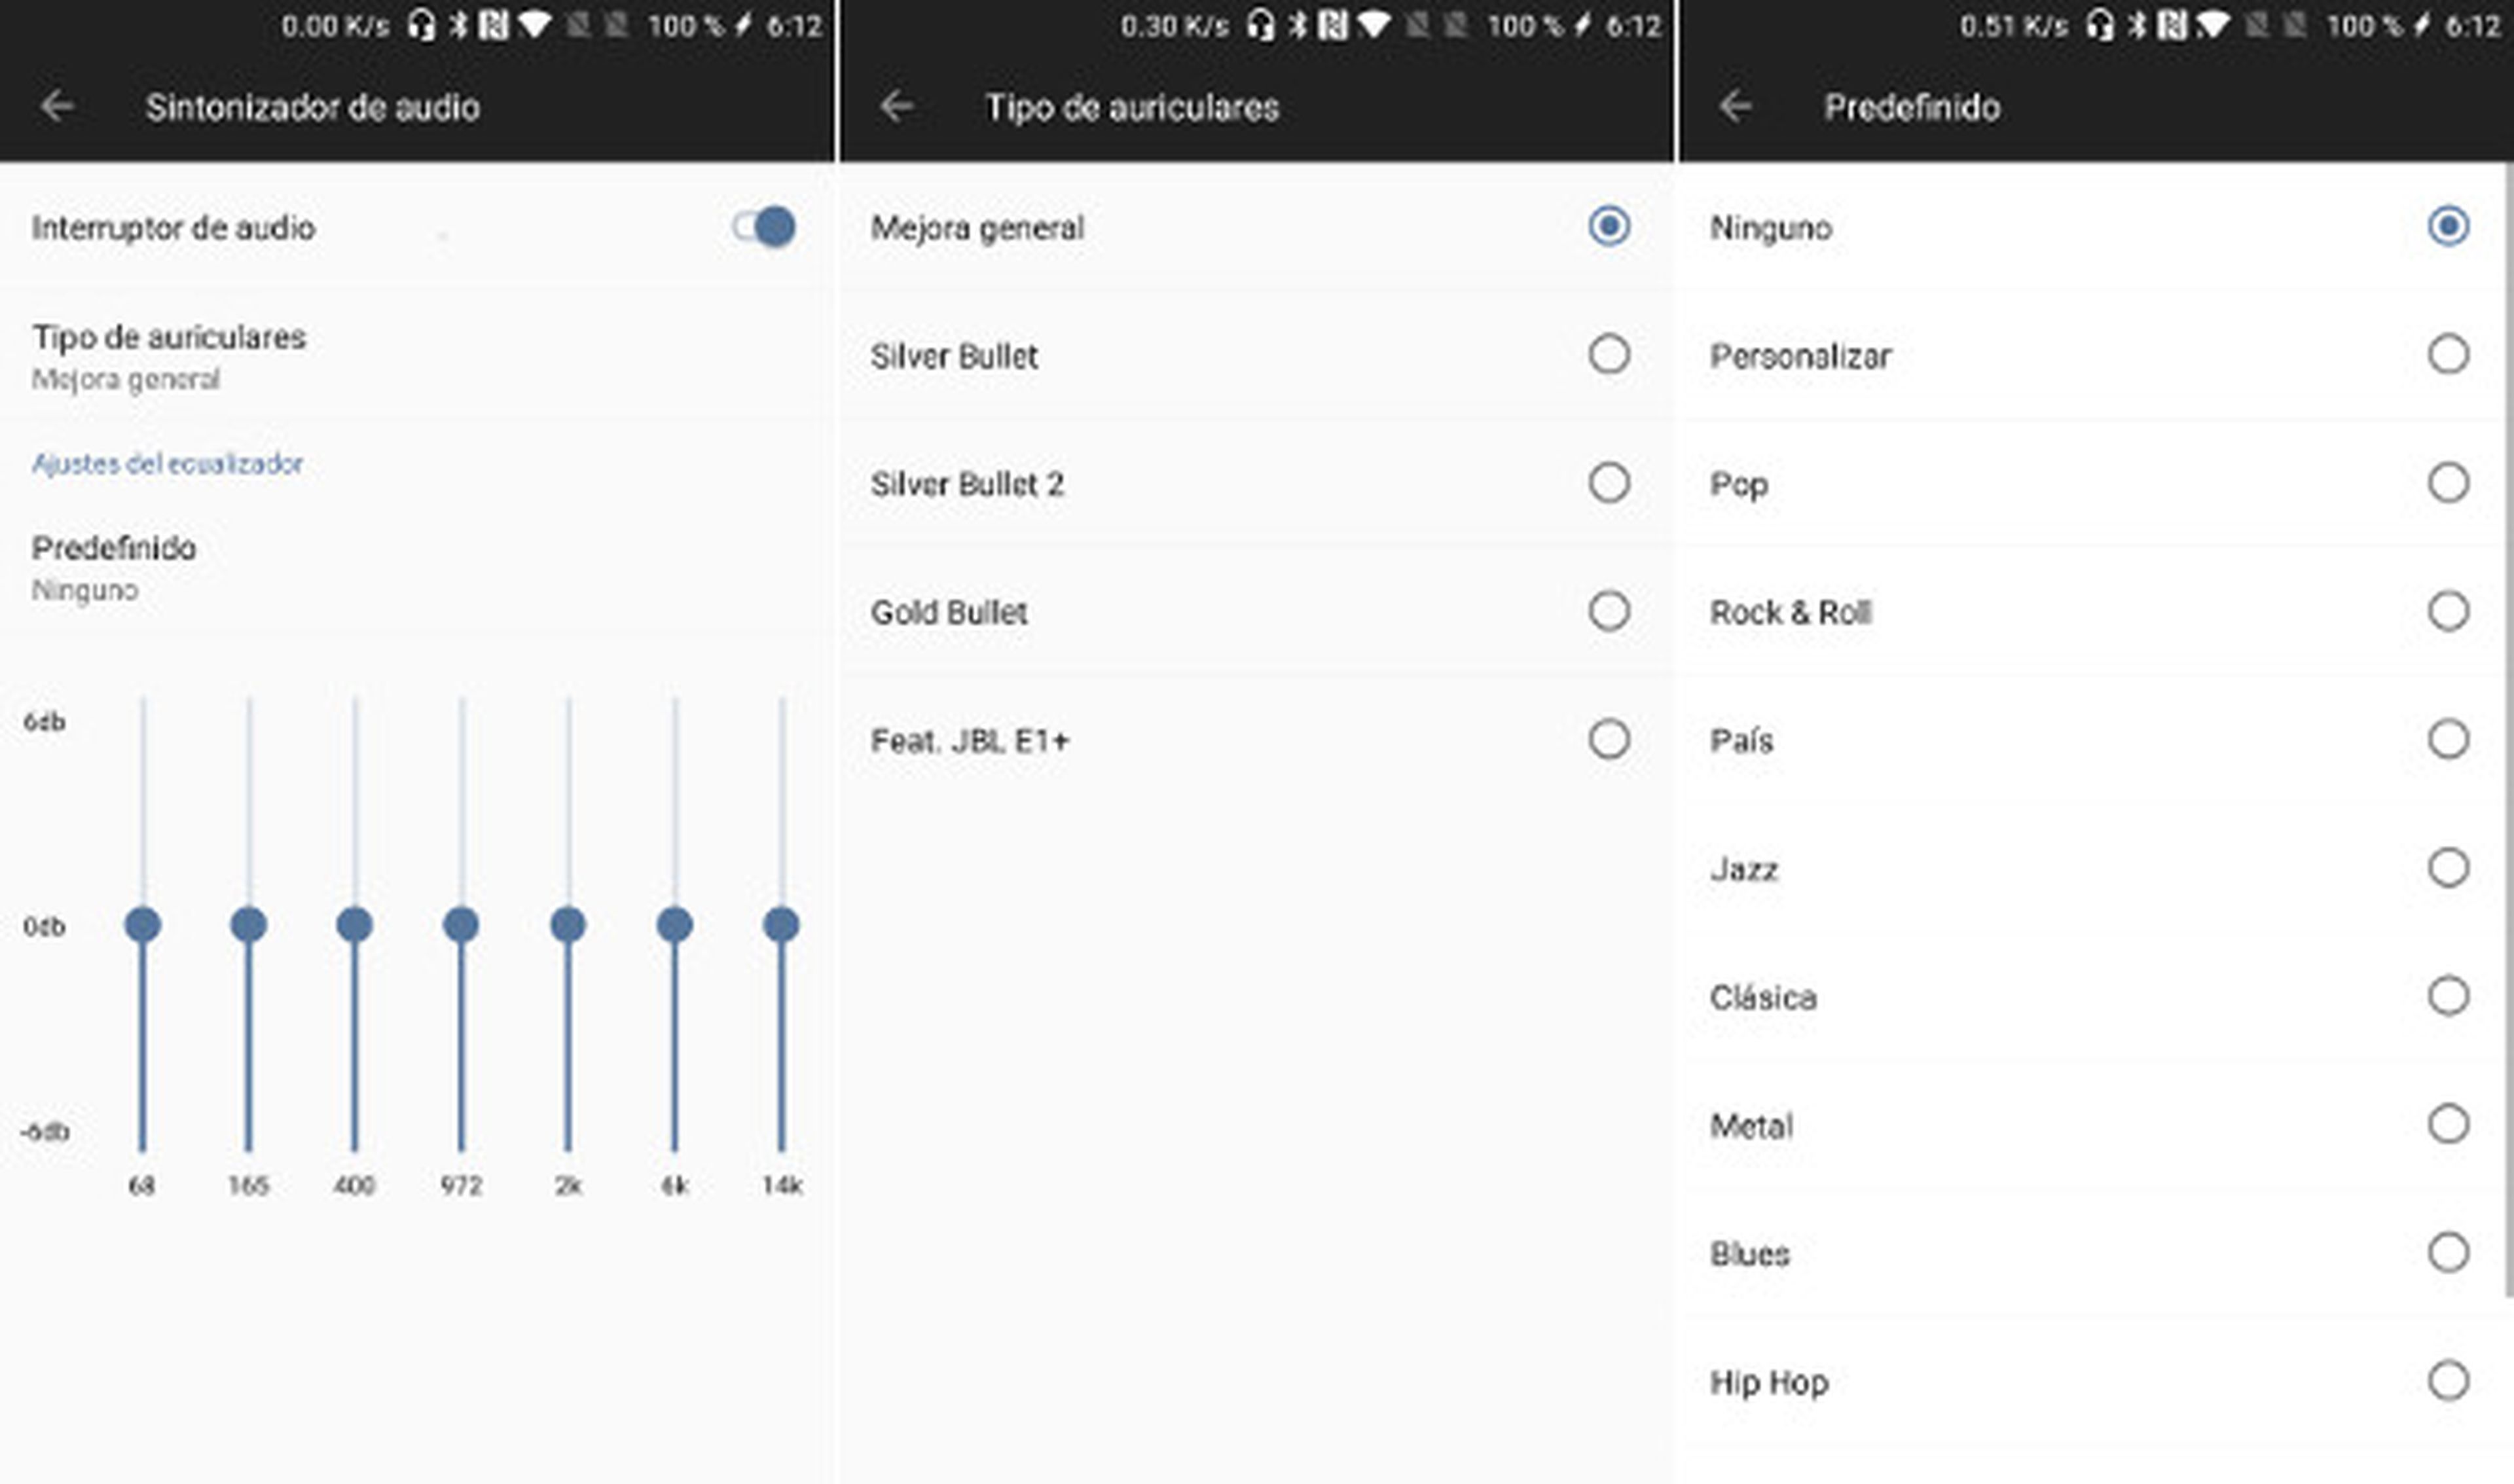 El OnePlus 5 incorpora una opción de 'Sintonizador de audio' en el apartado de Sonido que permite mejorar la calidad y ecualizar la señal jugando con los valores disponibles.